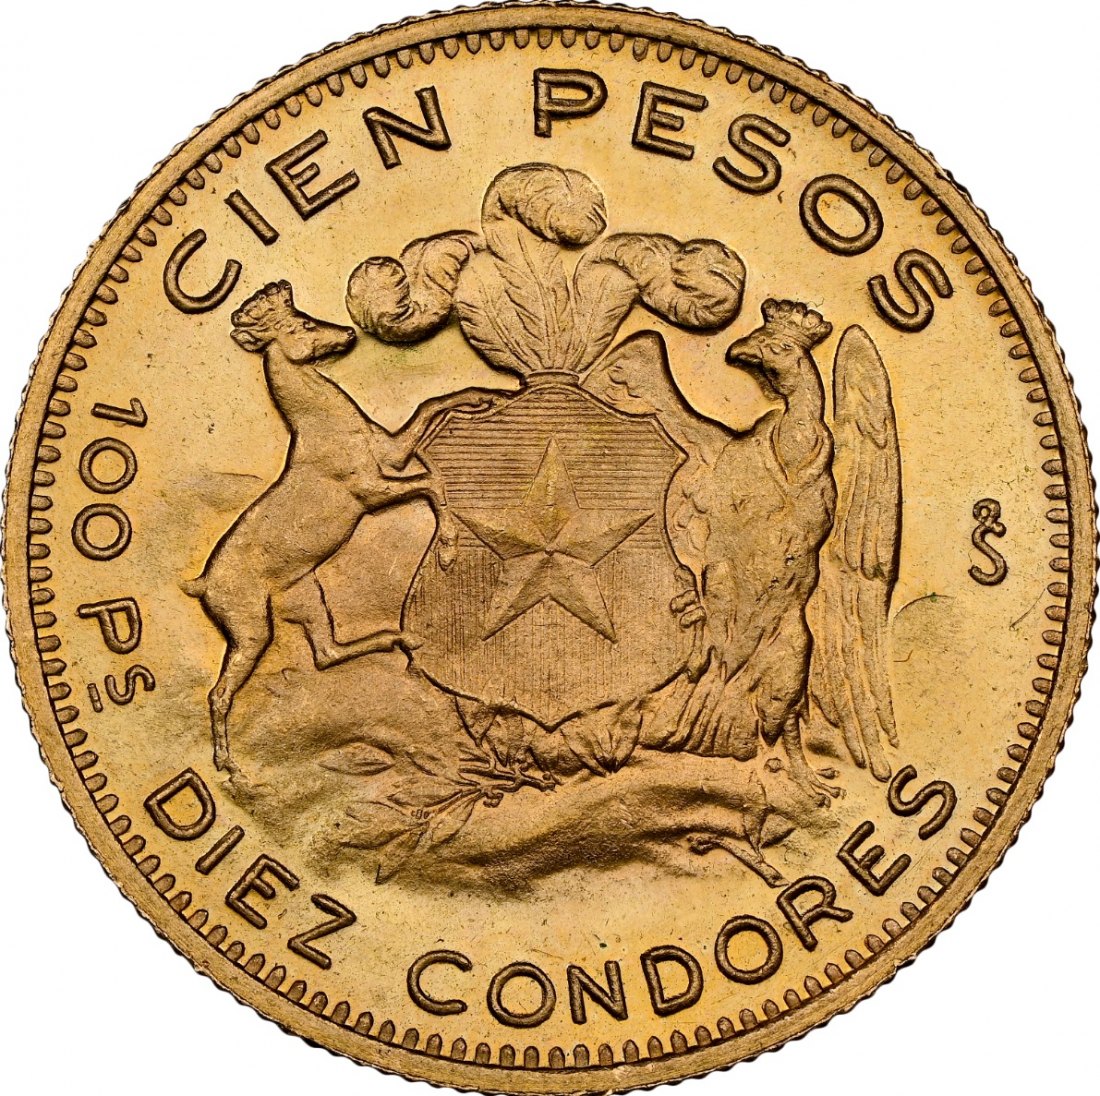  Chile 100 Pesos 1963 SO | NGC MS65   